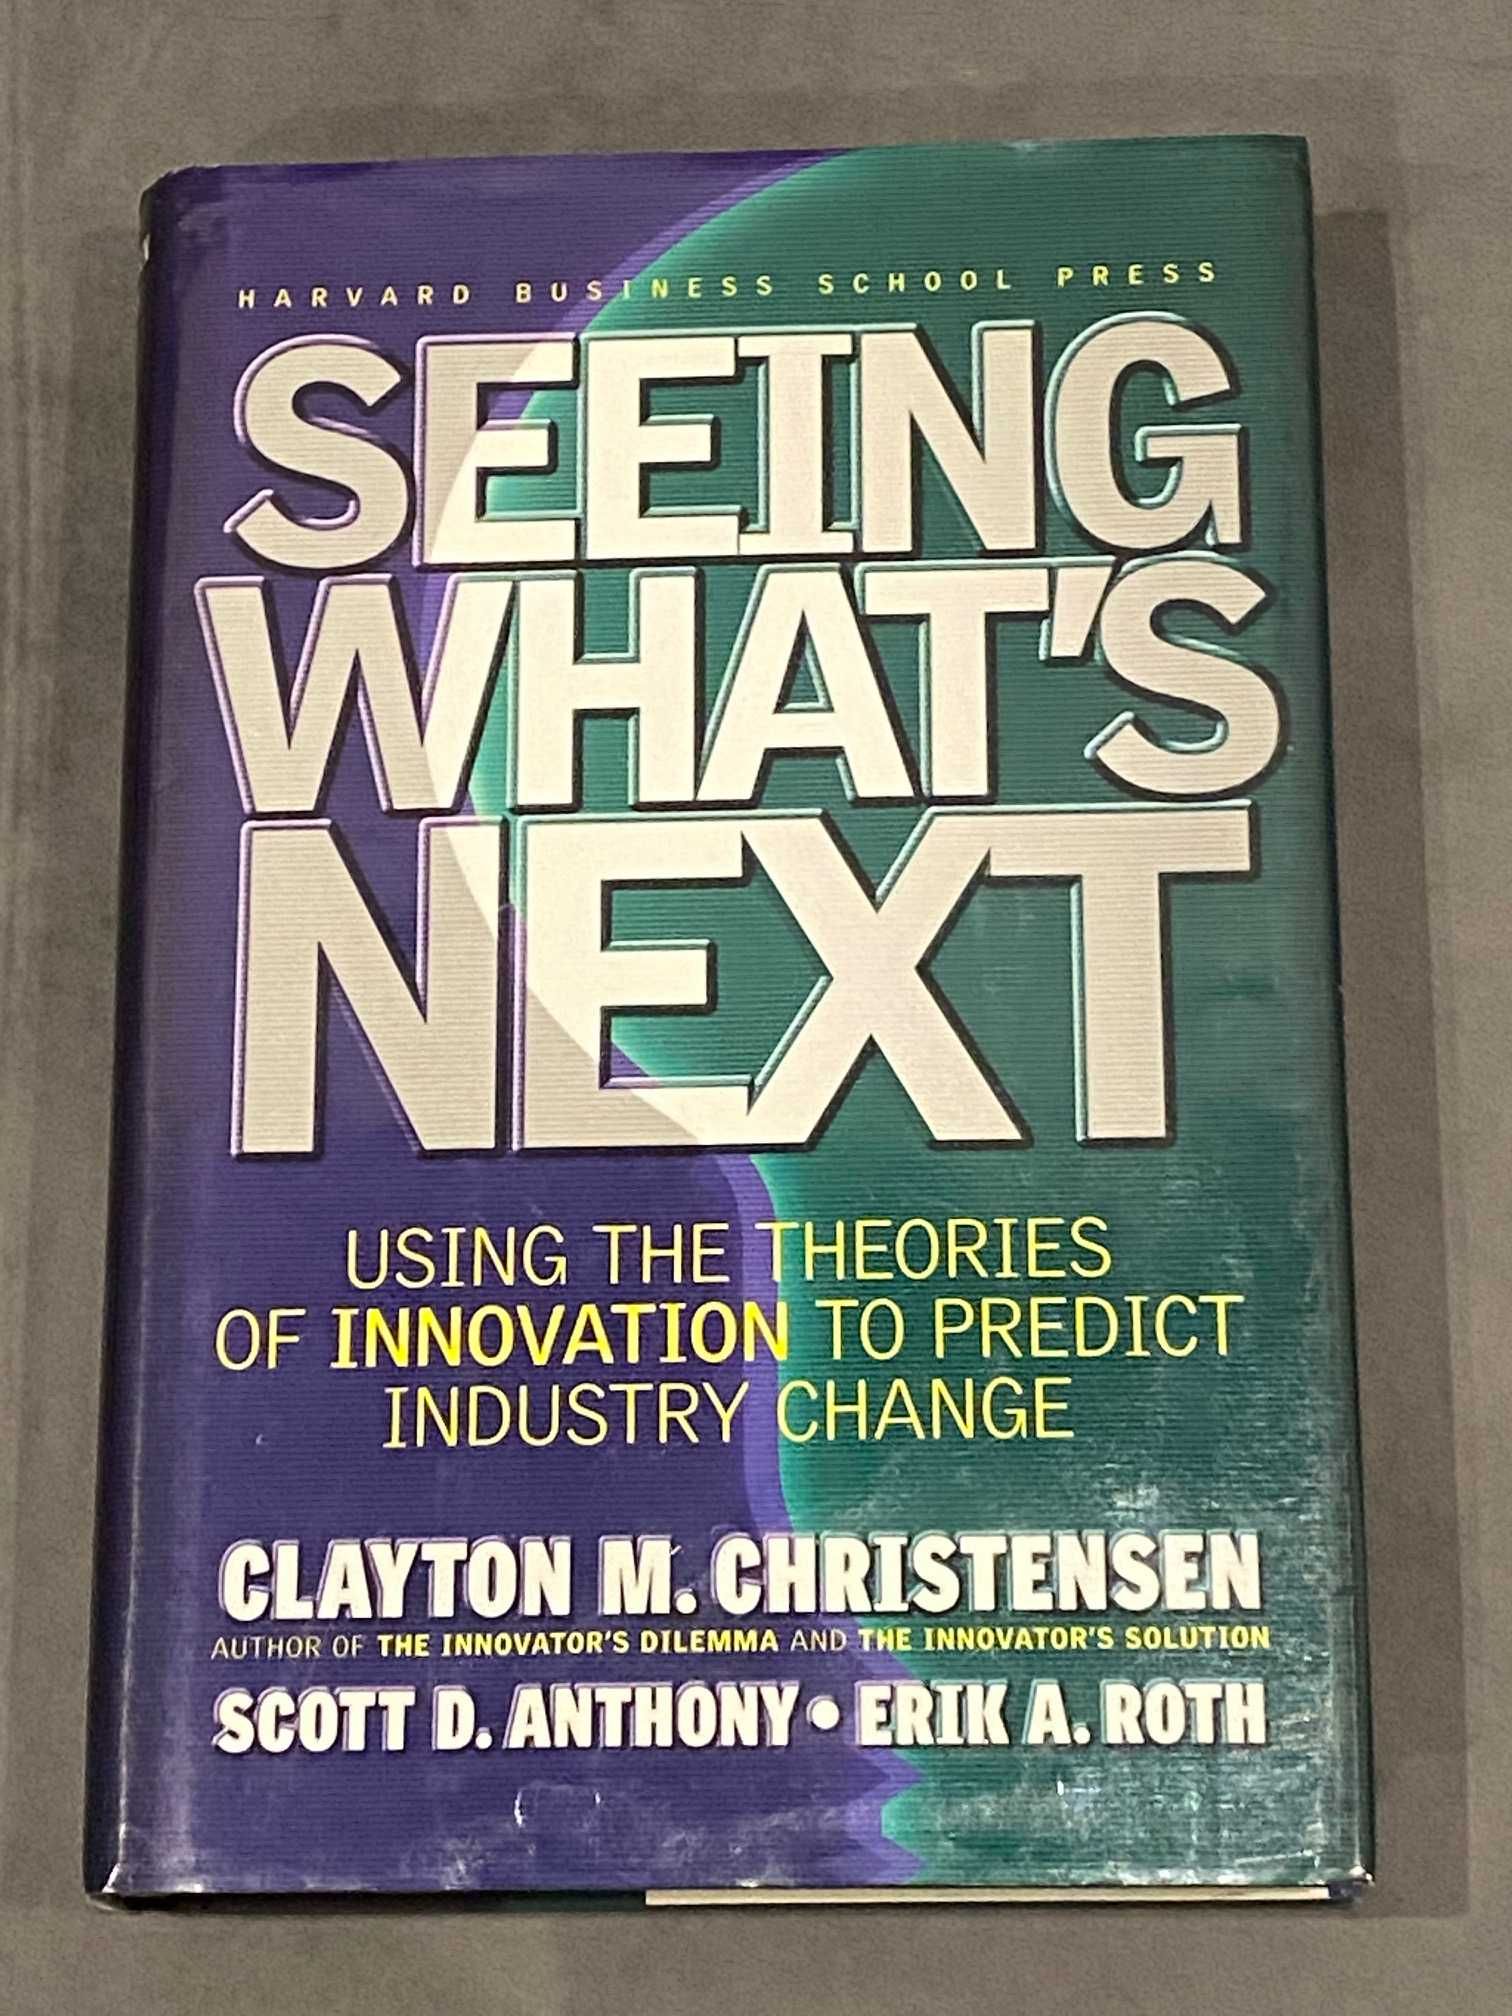 Seeing what's next. Clayton Christensen